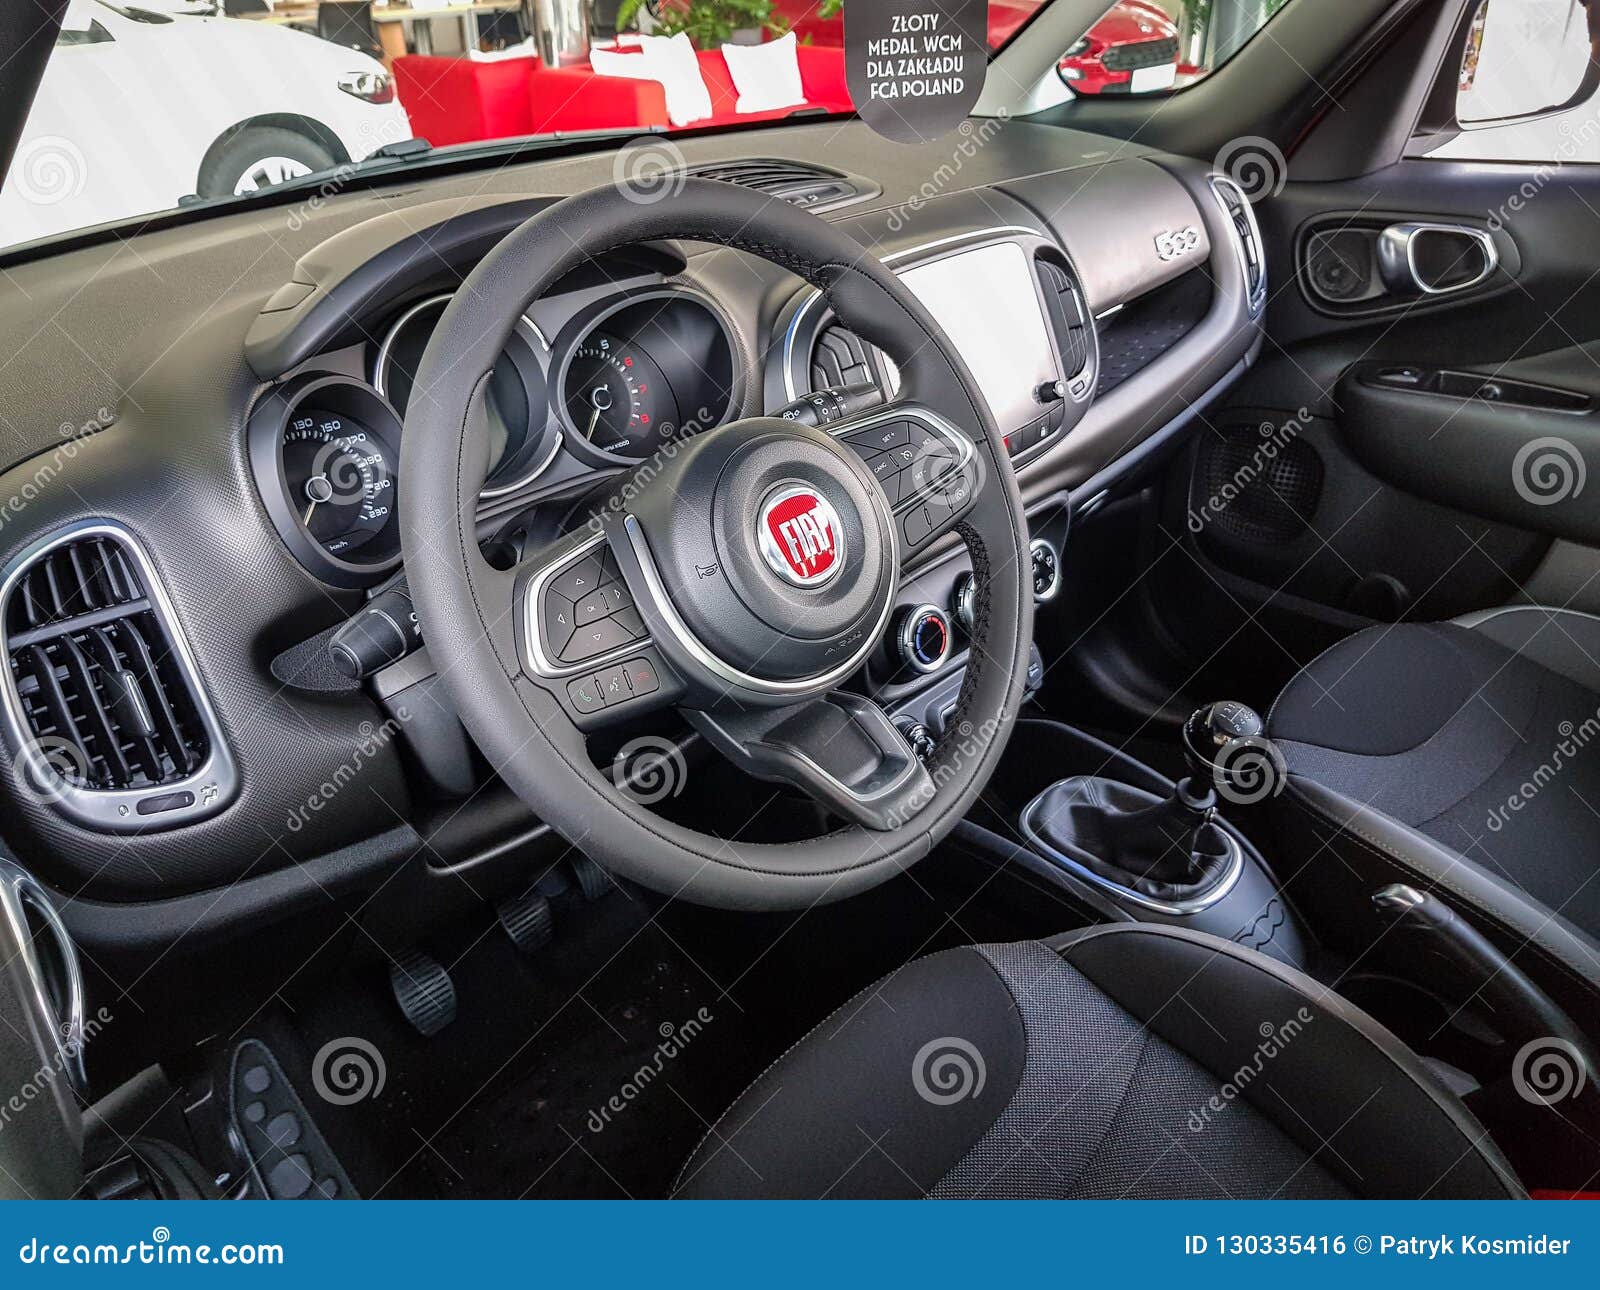 New Fiat 500 L interior (official pics) | Fiat 500l, New fiat, Fiat 500